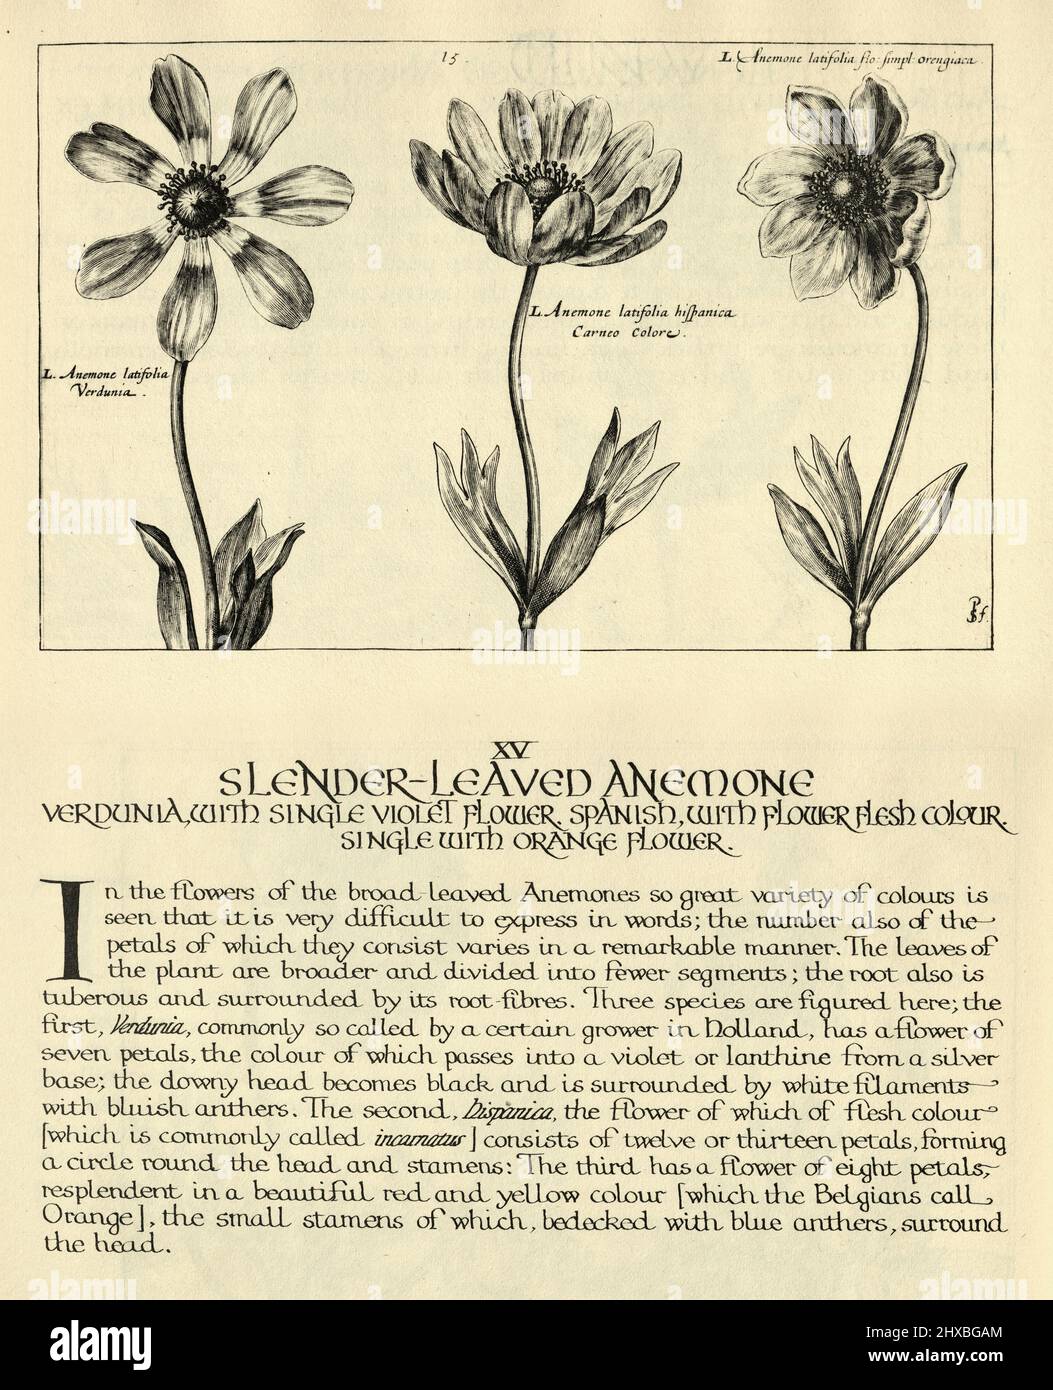 Botanischer Kunstdruck von schlanker, blättriger Anemone, Verdunia, Spanisch, aus Hortus Floridus von Crispin de Passe, Vintage-Illustration Stockfoto